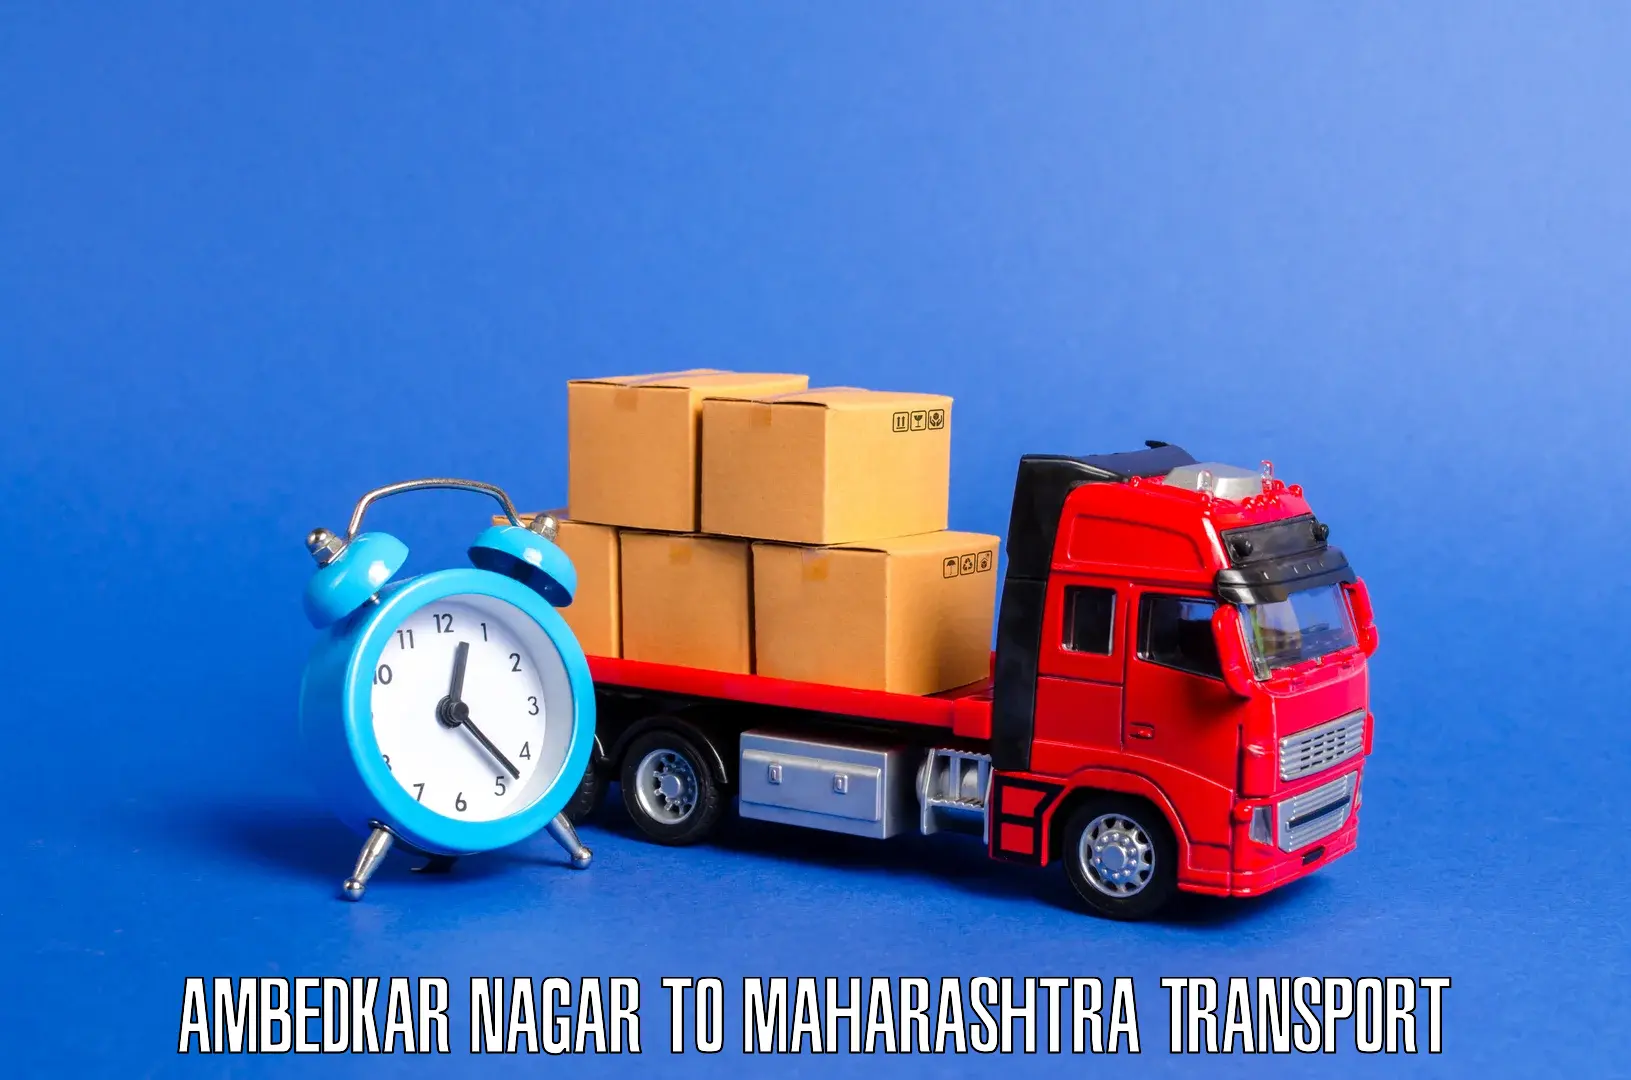 Container transport service Ambedkar Nagar to Maharashtra